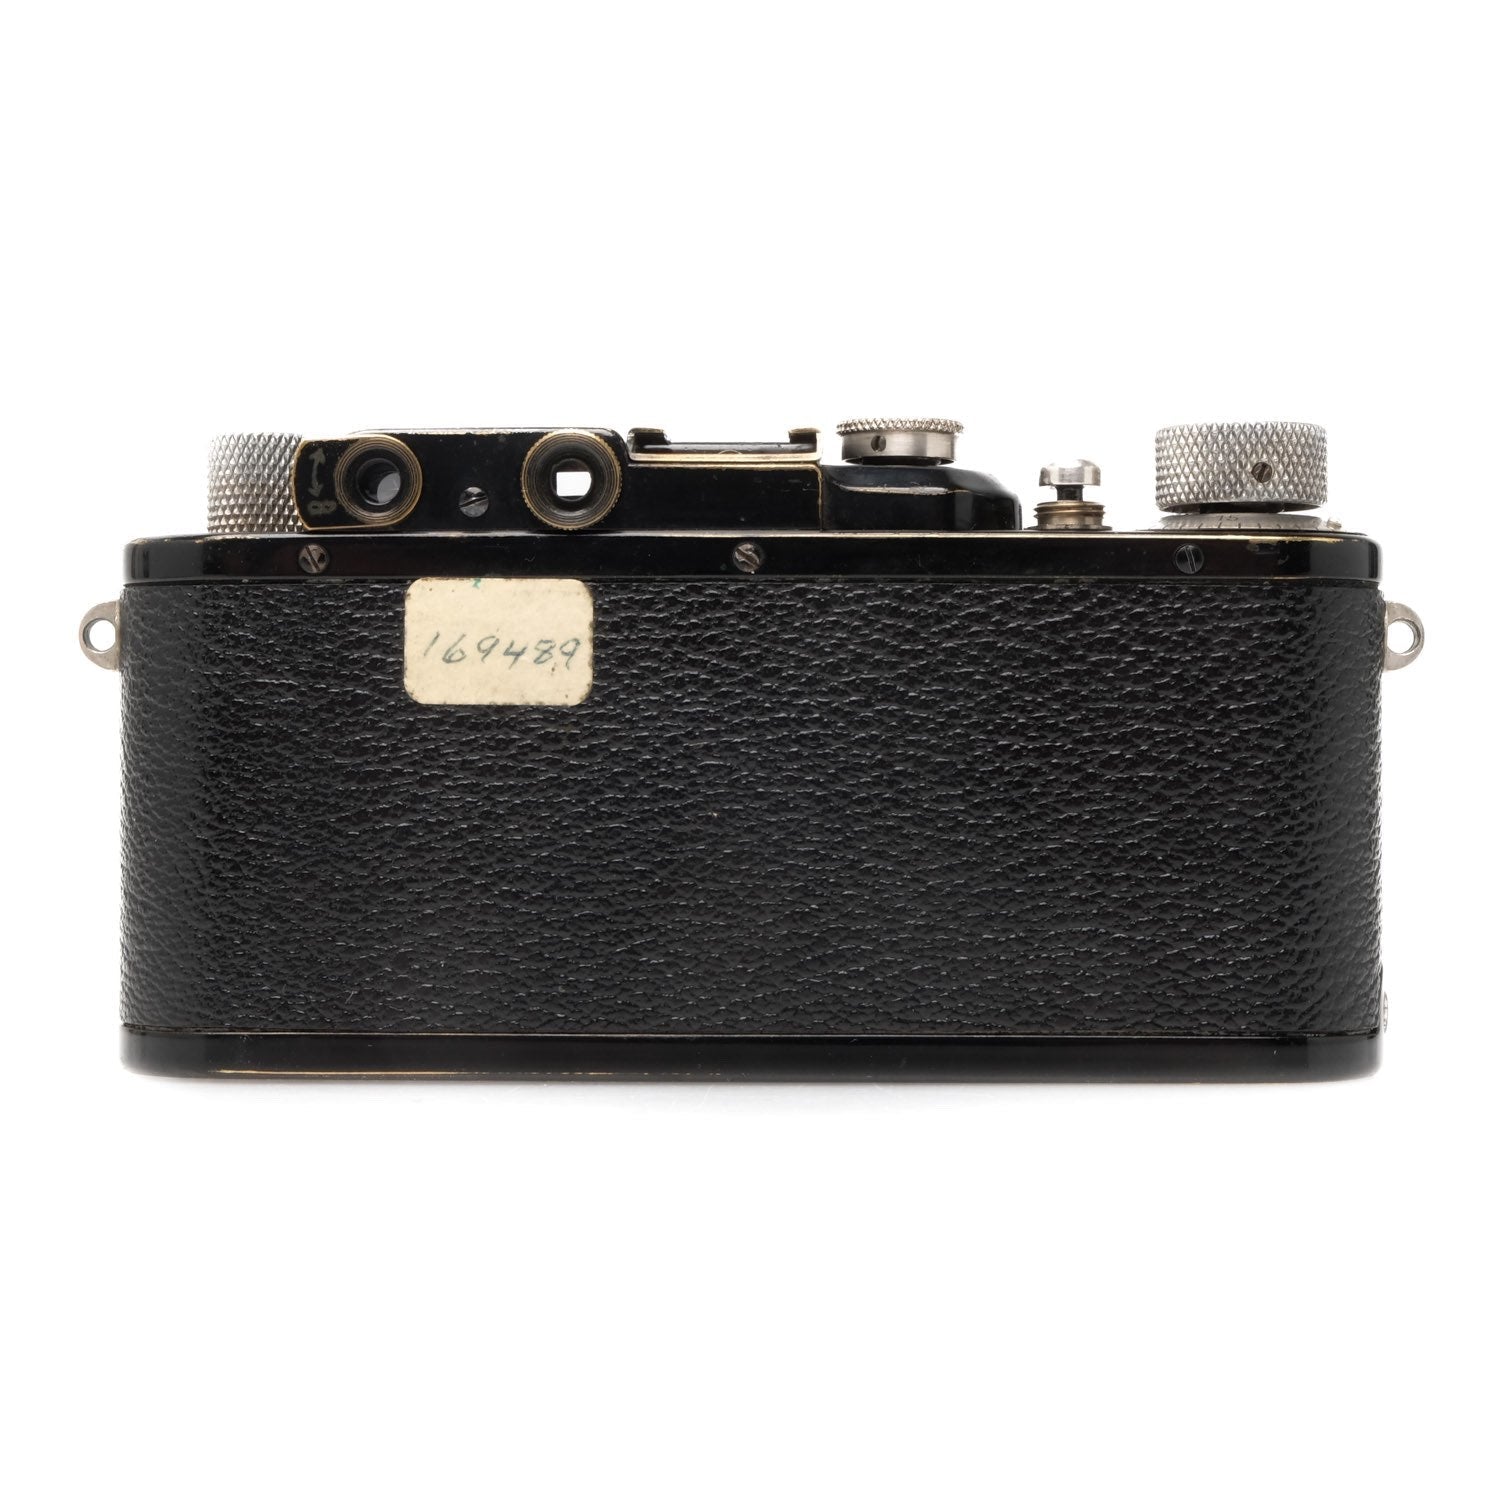 Leica III Black, DAG Overhauled  169489